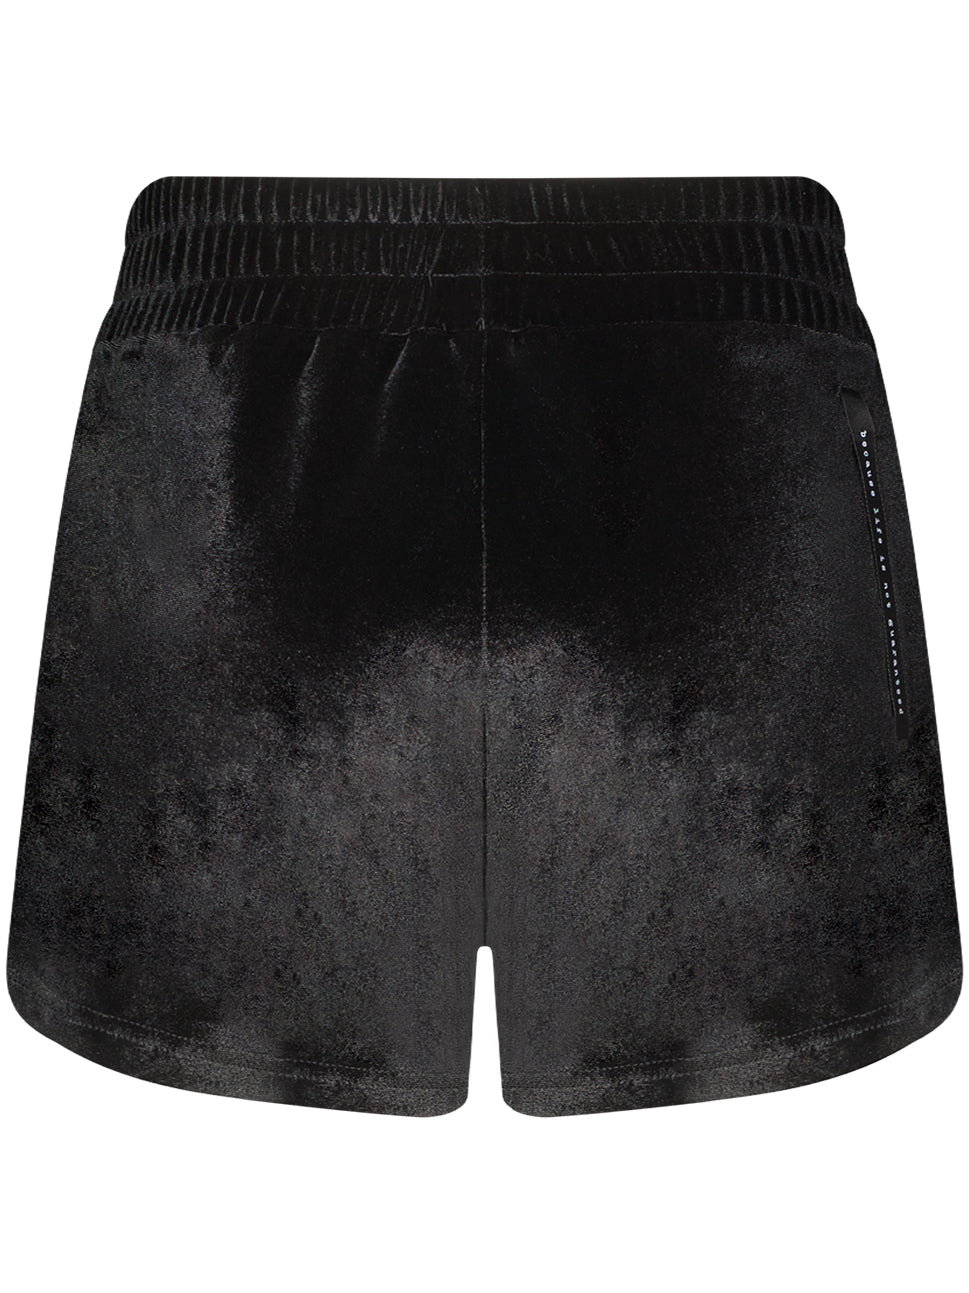 Bling Velour Shorts Black BLWM KBS01